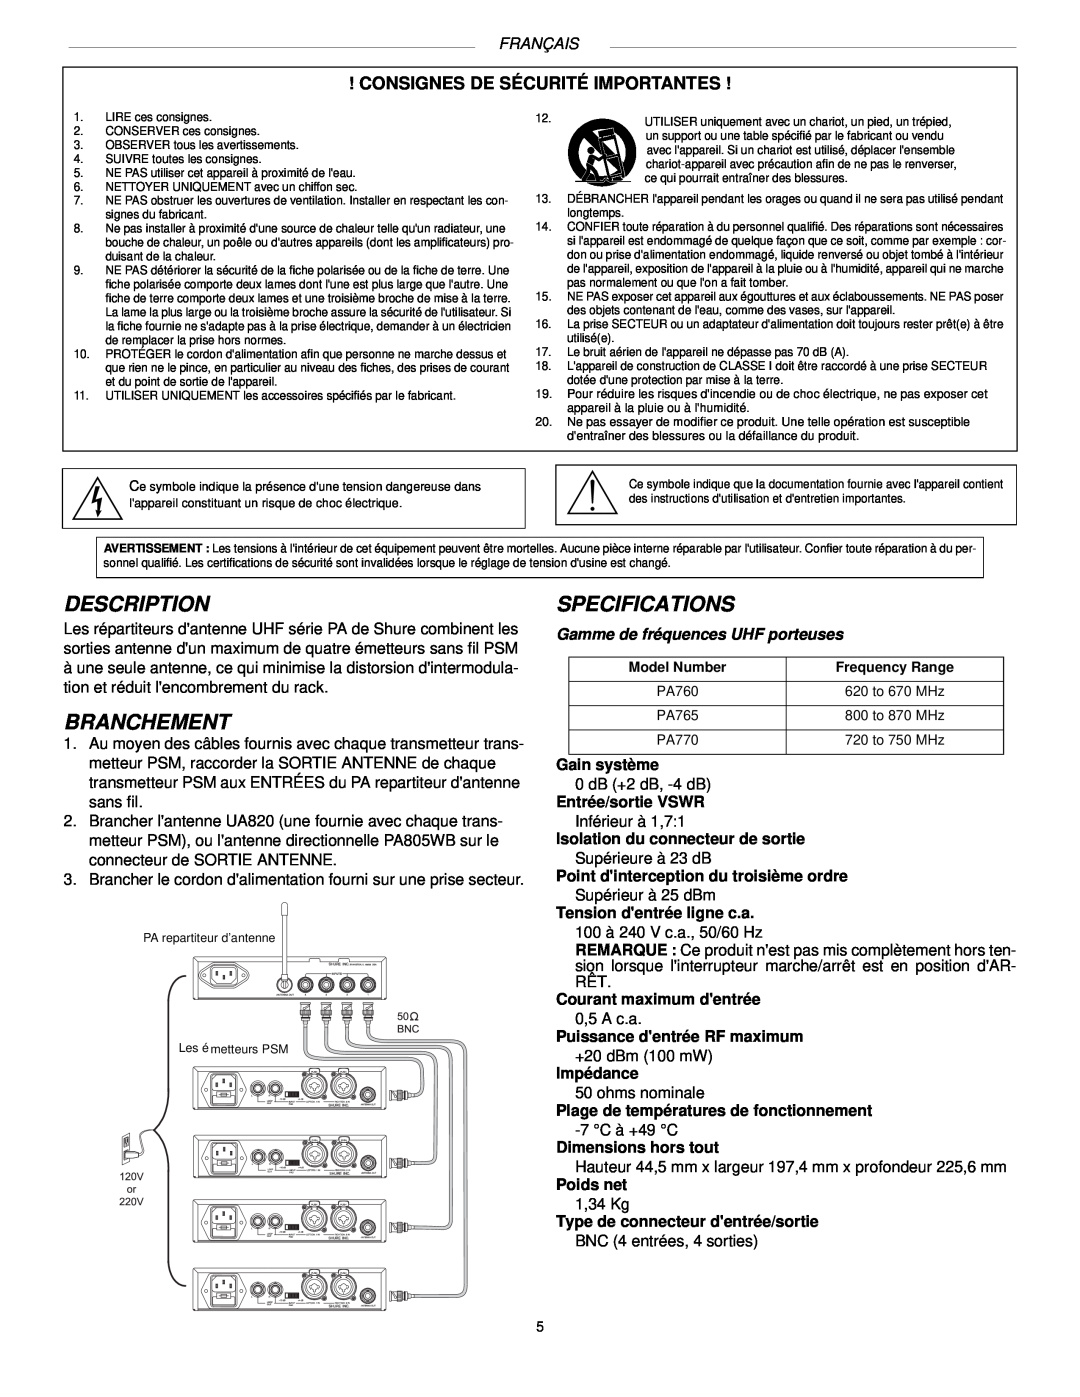 Shure PA765, PA770, PA760 manual Description, Branchement, Specifications, Consignes De Sécurité Importantes, Français 